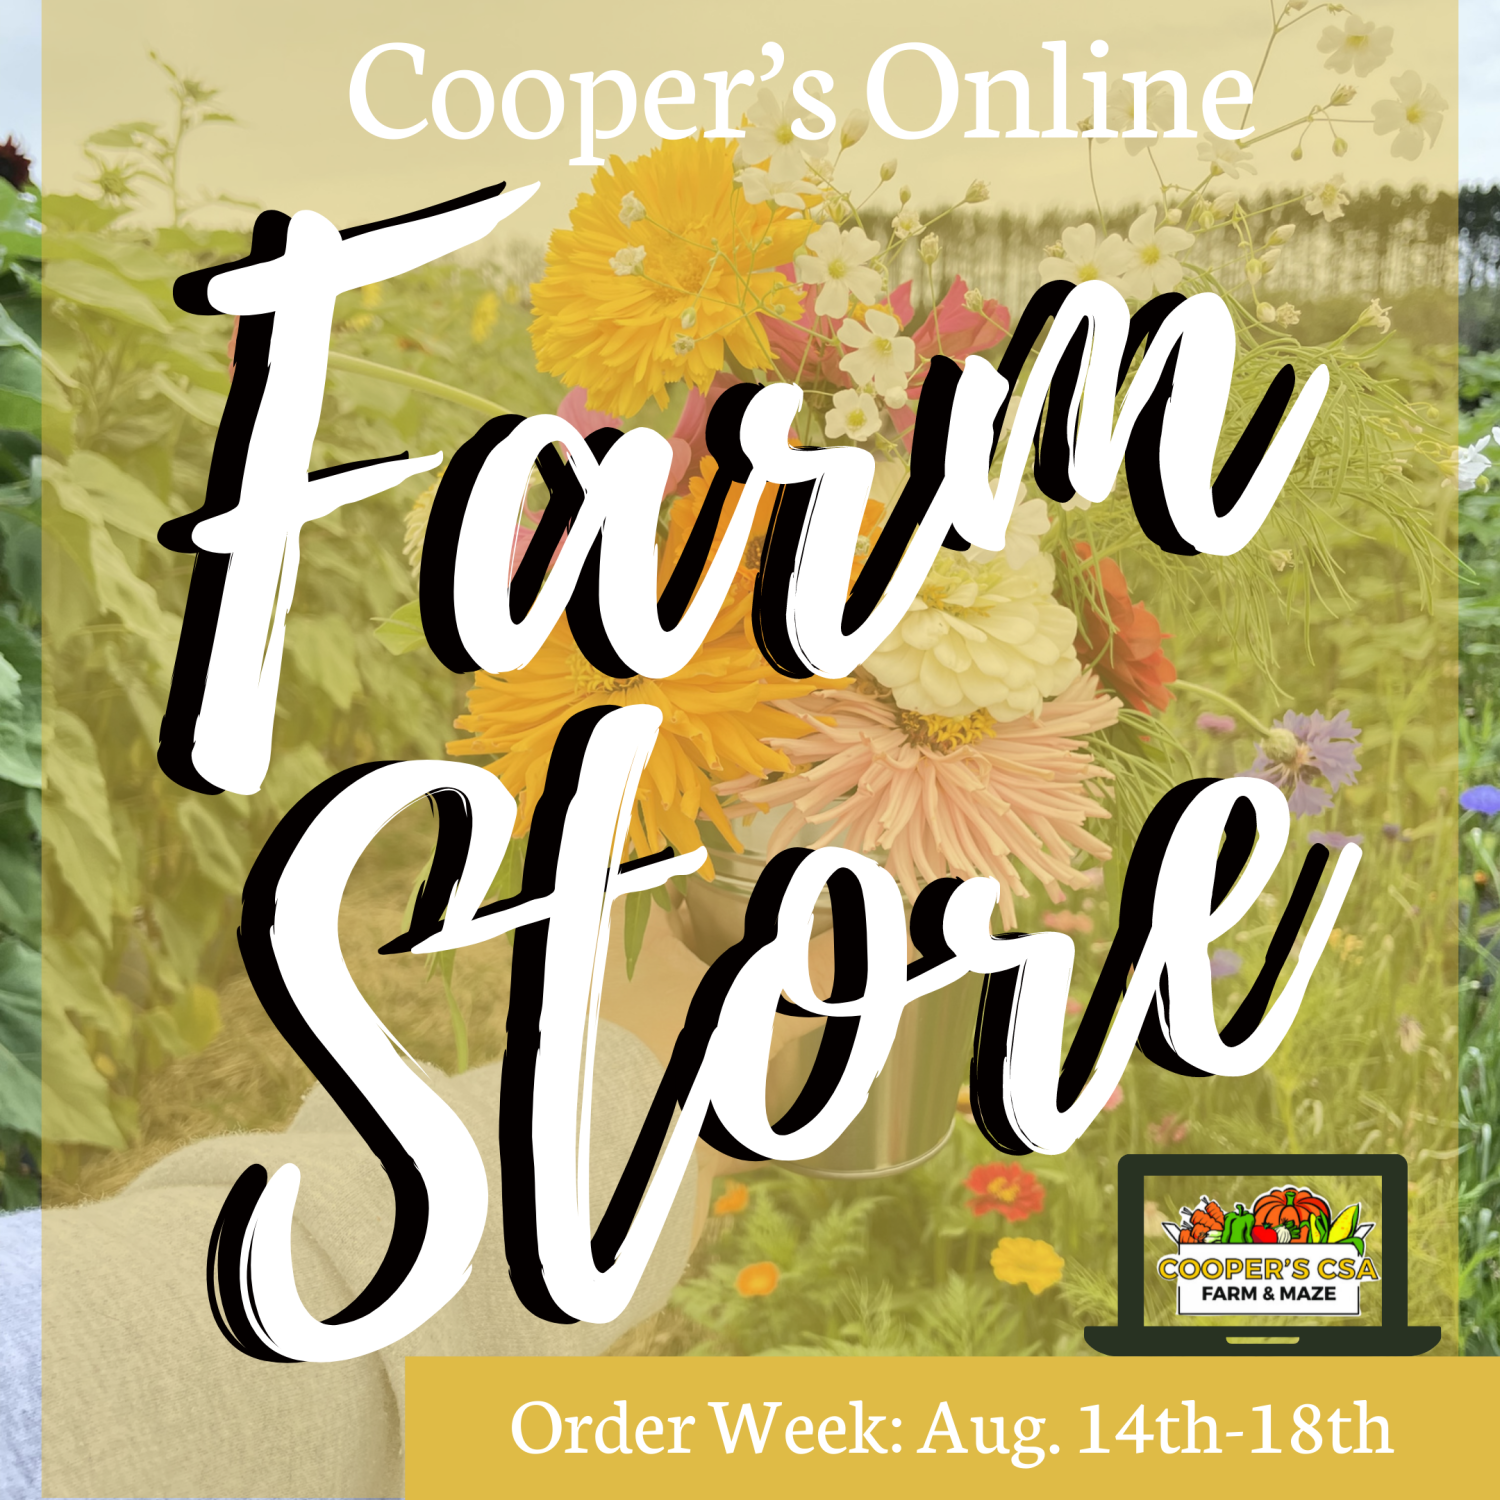 Previous Happening: Coopers CSA Online FarmStore- Order Week 11